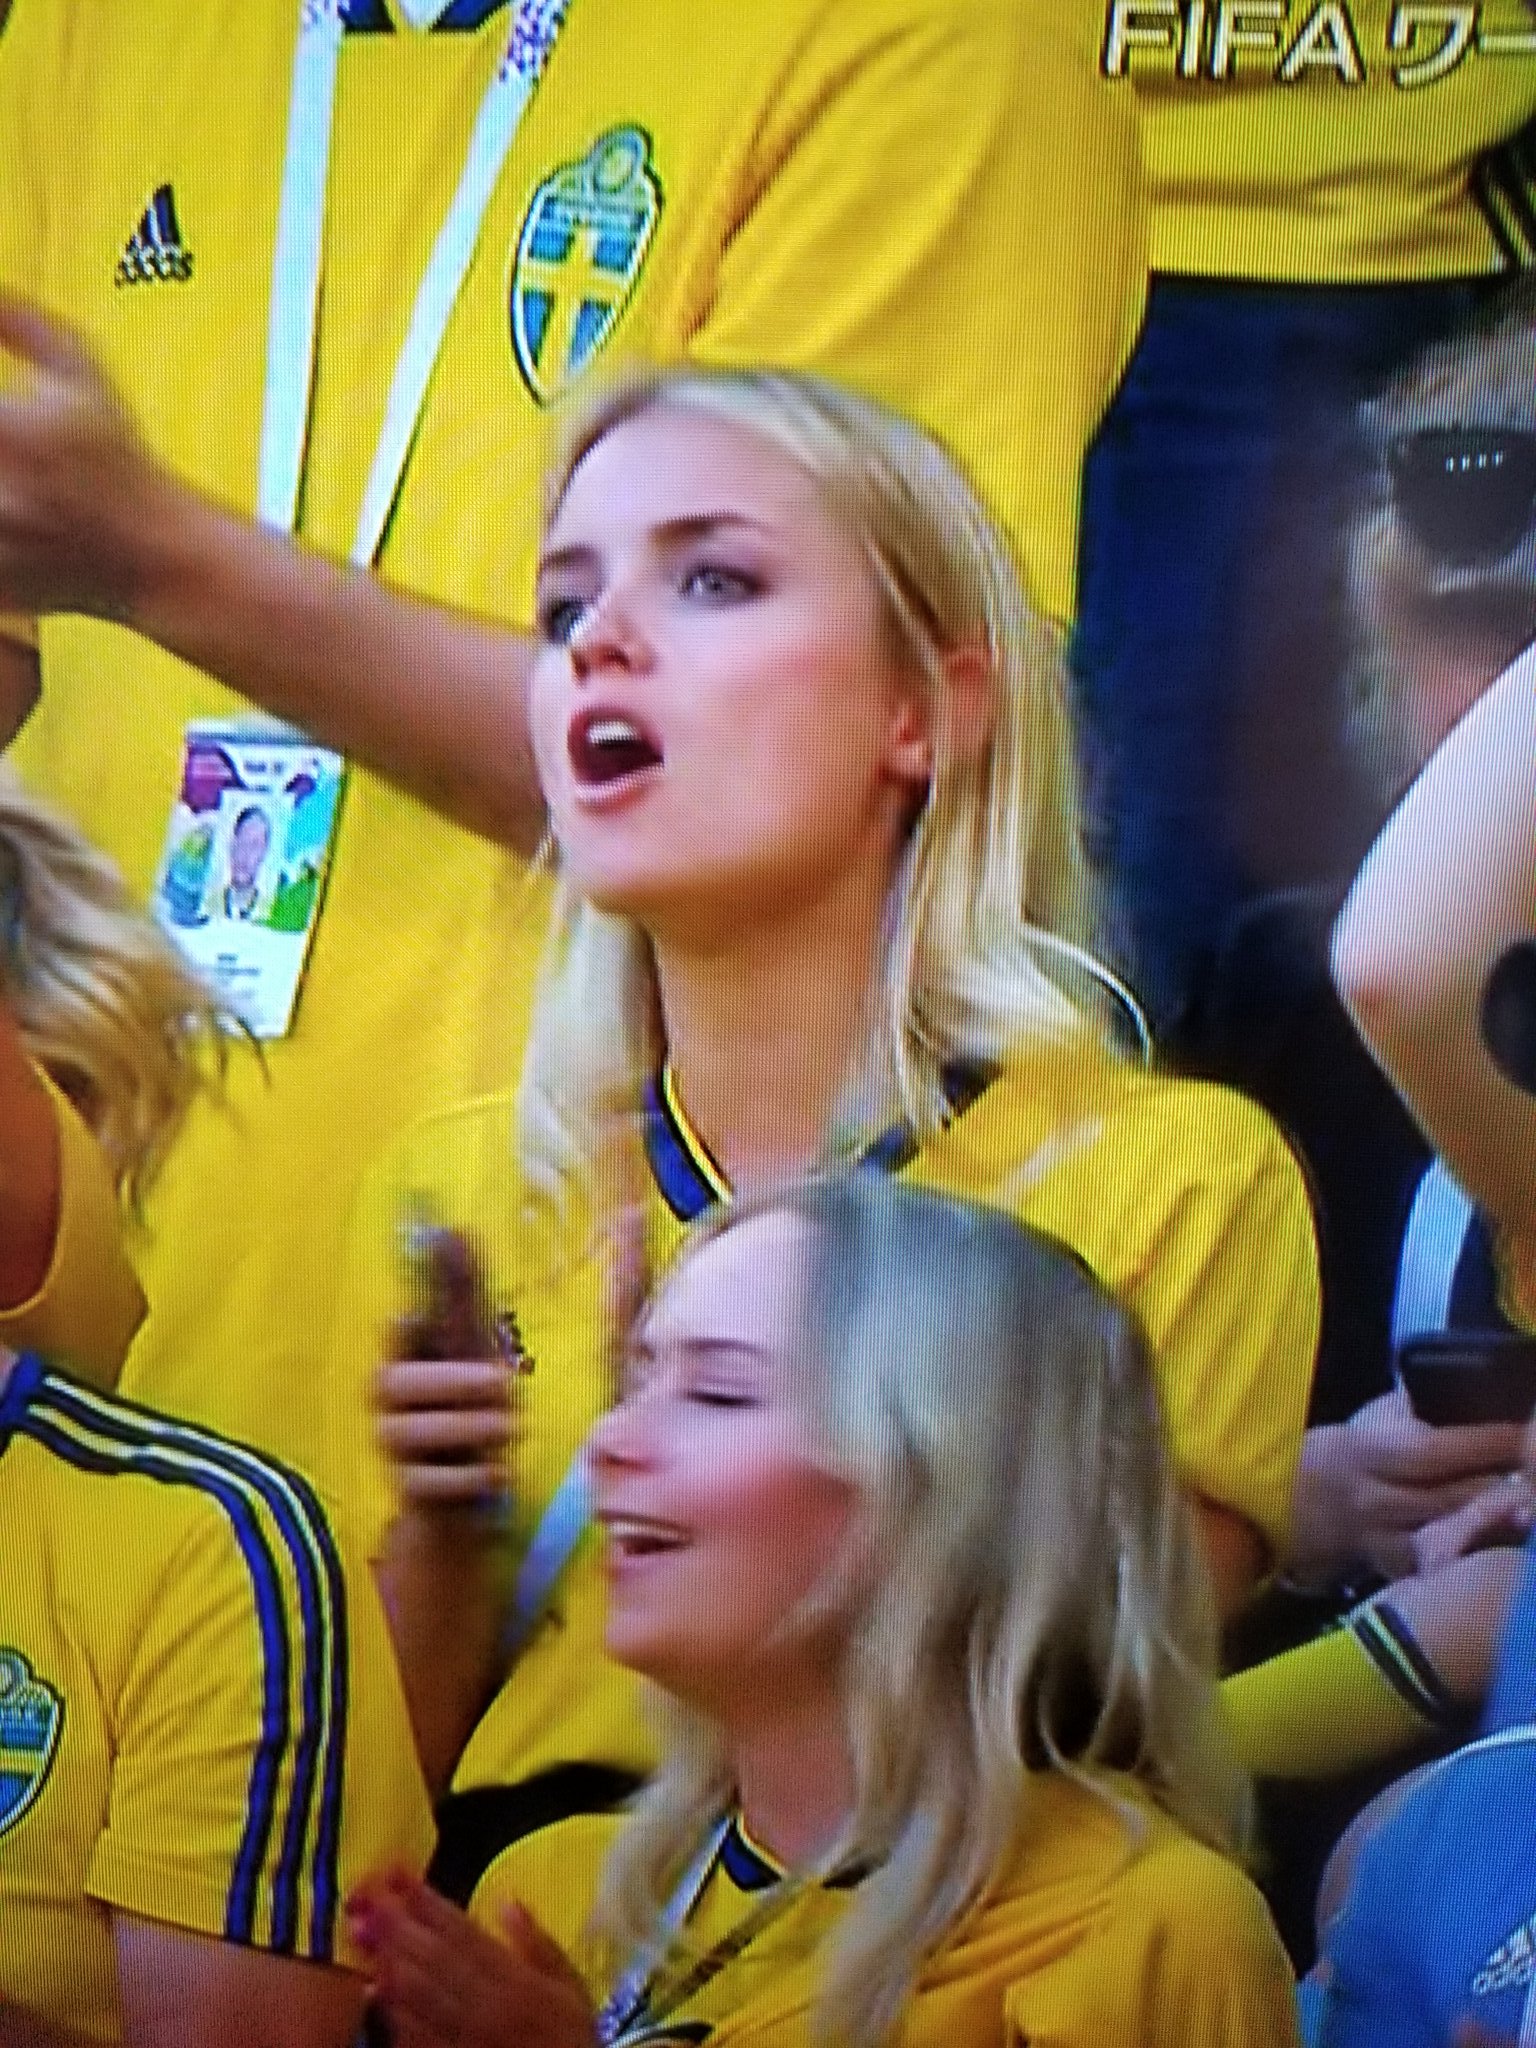 ぽん スウェーデン負けた でもサポーター部門は優勝かも ワールドカップ スウェーデン 北欧 色白 綺麗 美人サポーター 美女サポーター 付き合いたい 結婚したい T Co 8kr2sjxdri Twitter